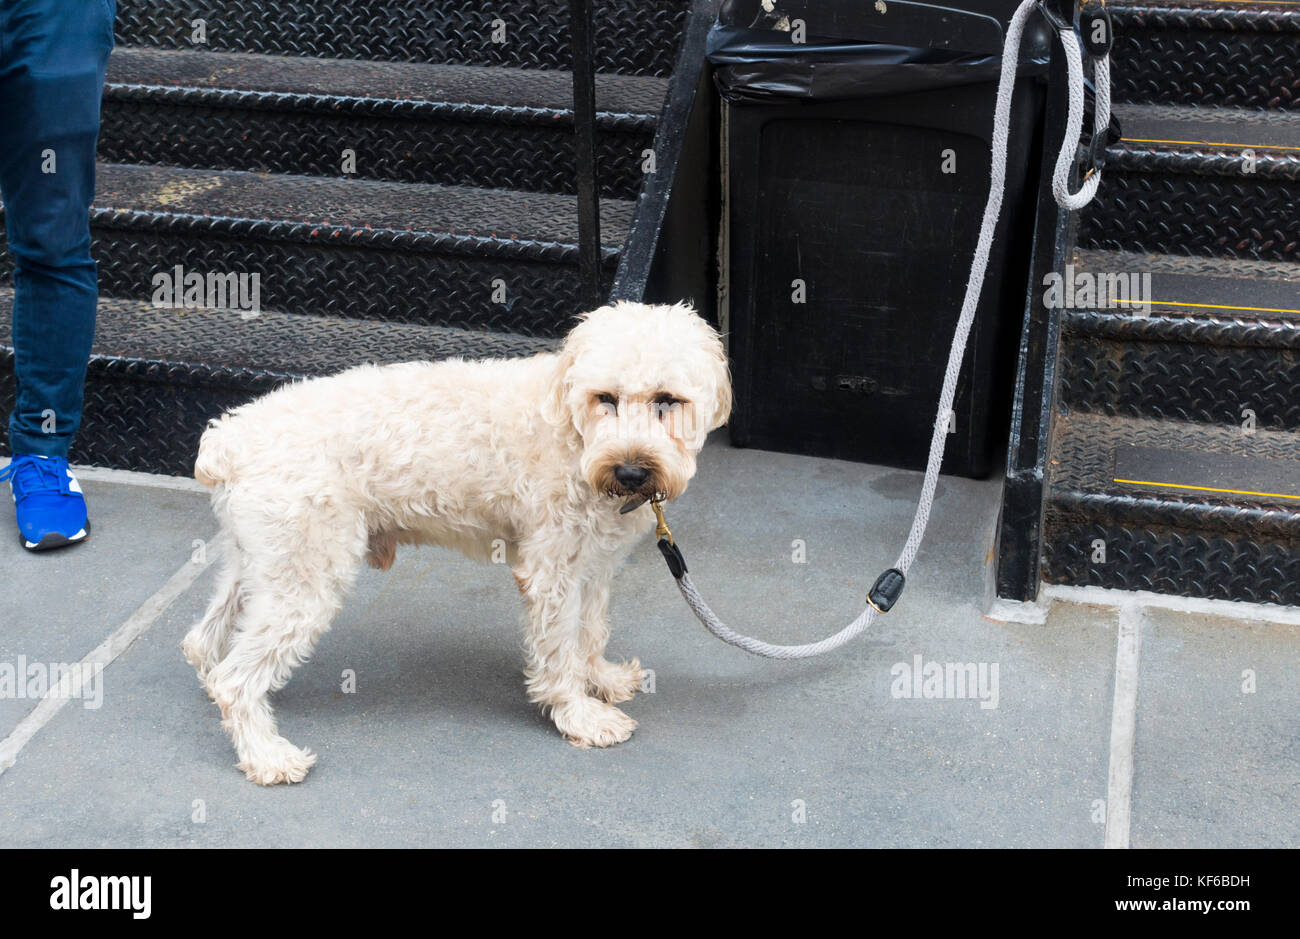 Goldendoddle Hund an ein Geländer an einer Schnur gebunden Stockfoto